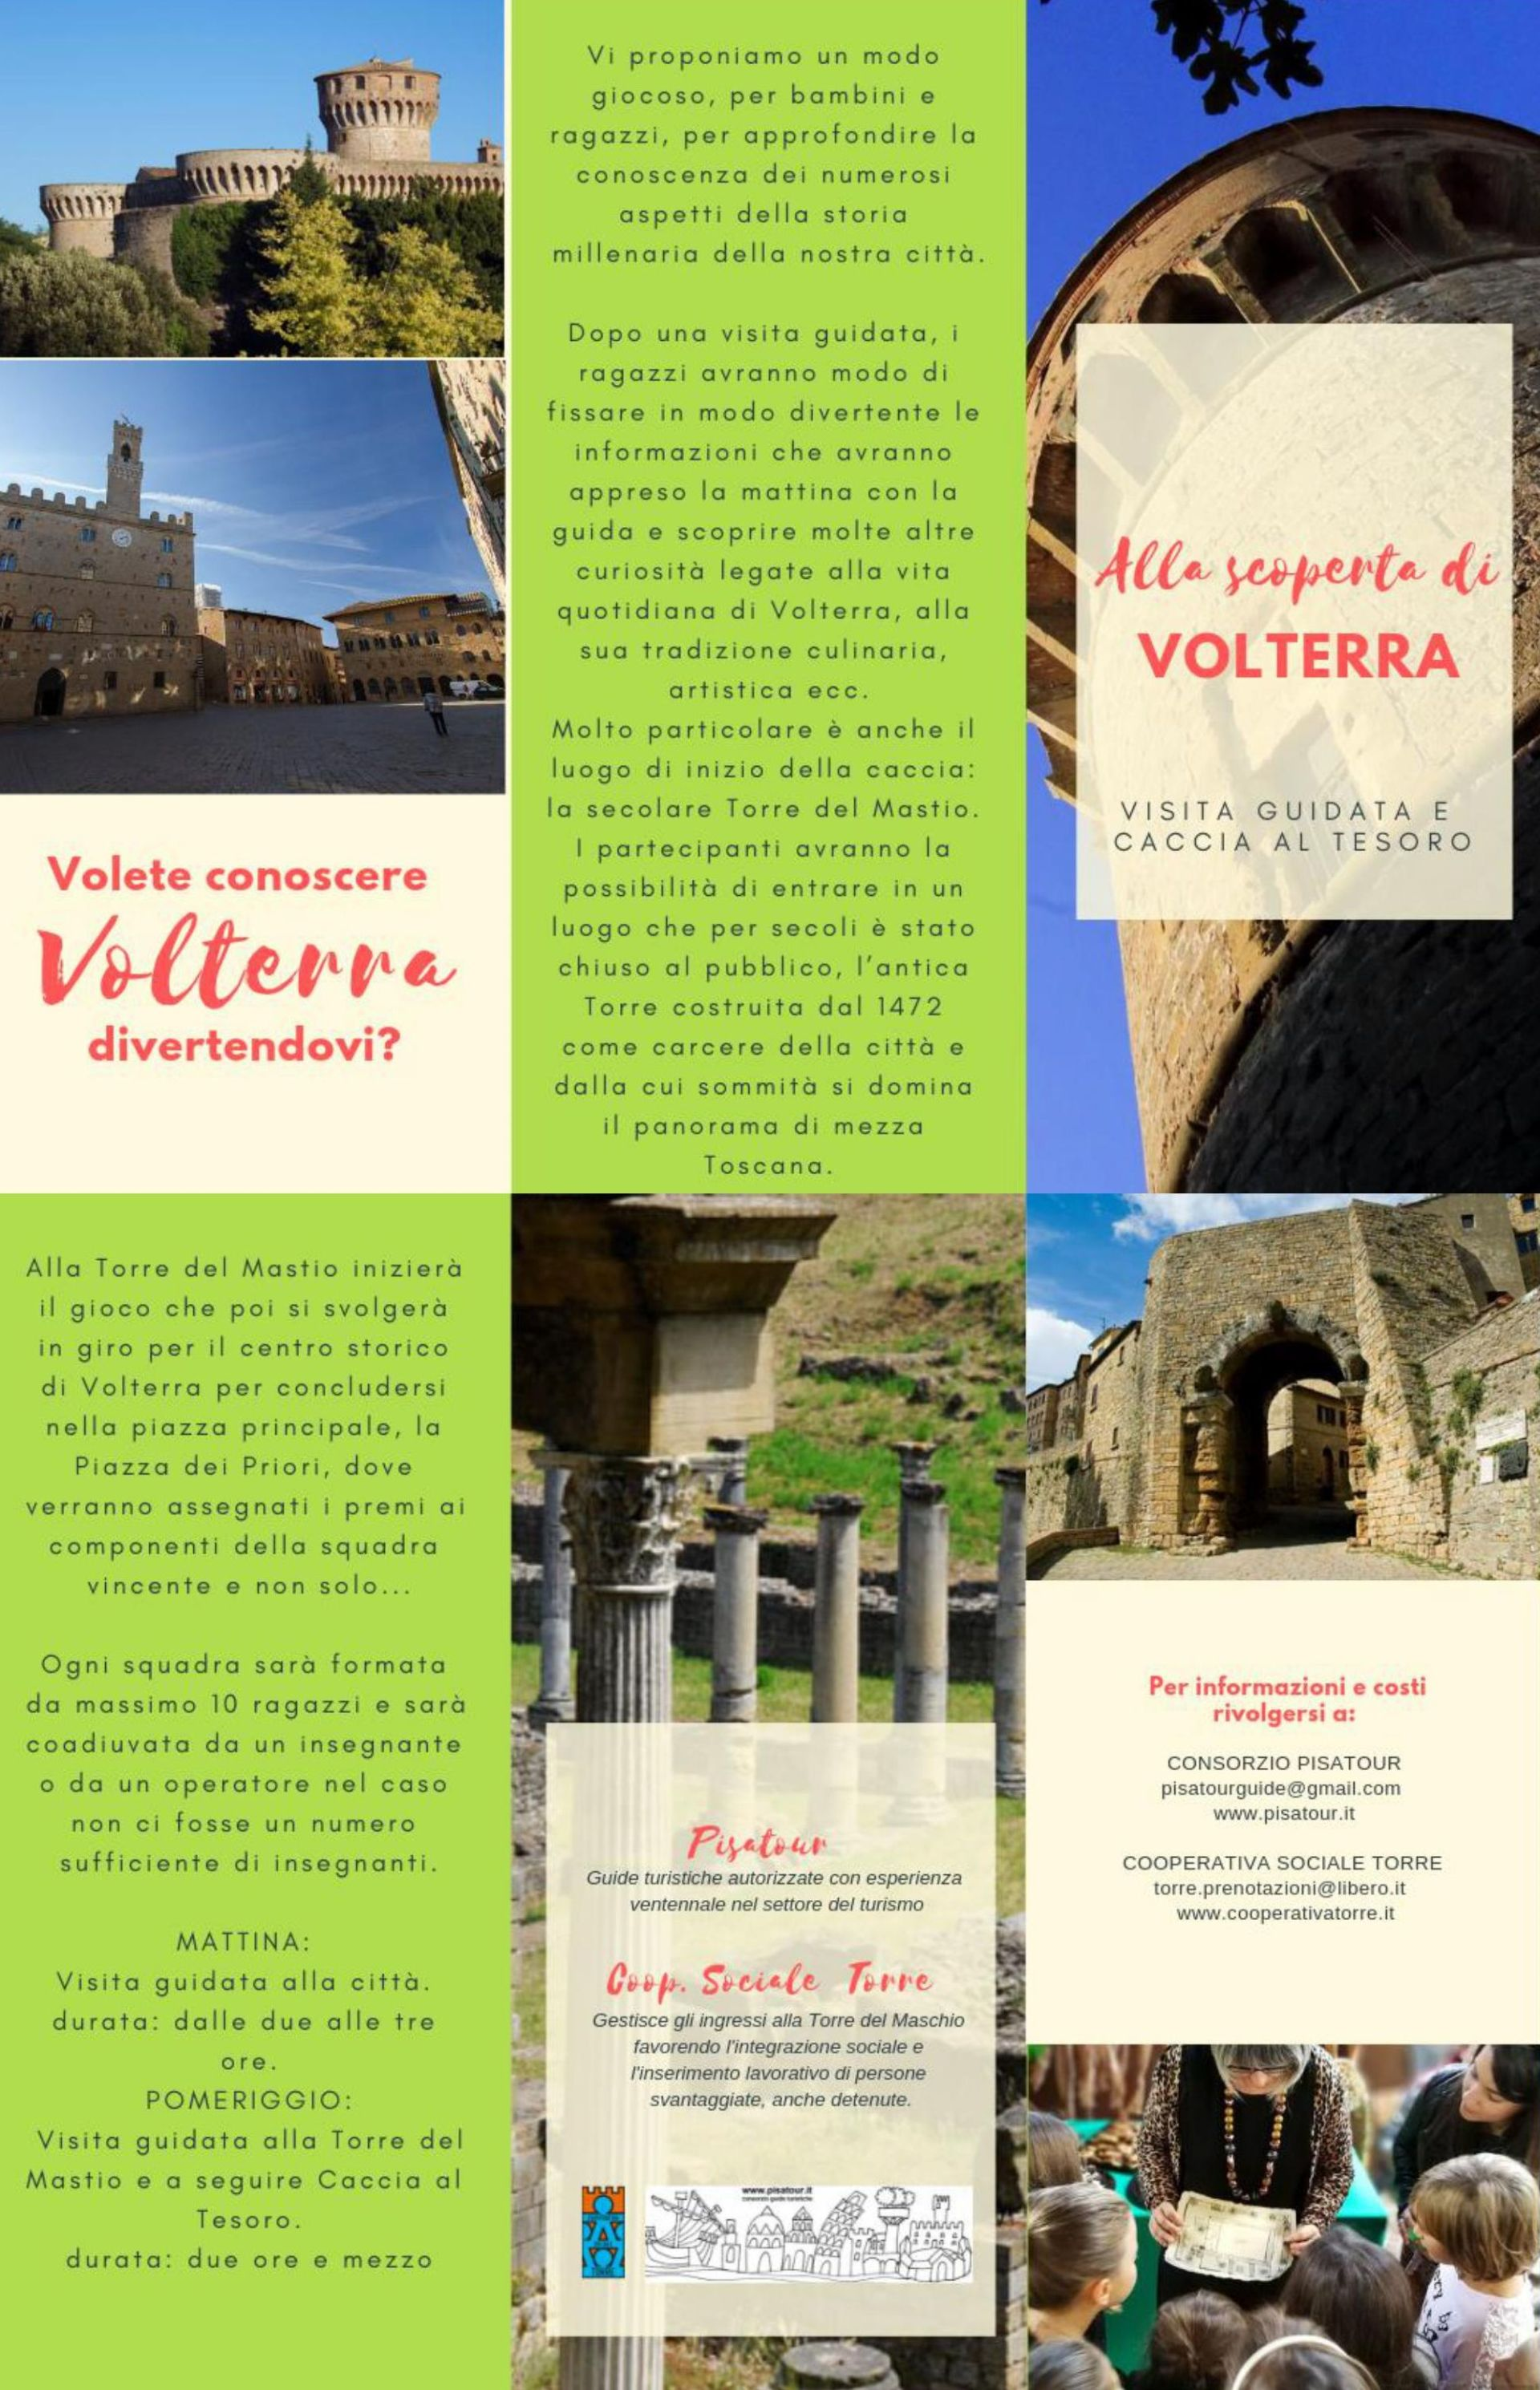 Volete conoscere Volterra divertendovi? Vi proponiamo un modo giocoso, per bambini e ragazzi, per approfondire la conoscenza dei numerosi aspetti della storia millenaria della nostra città.